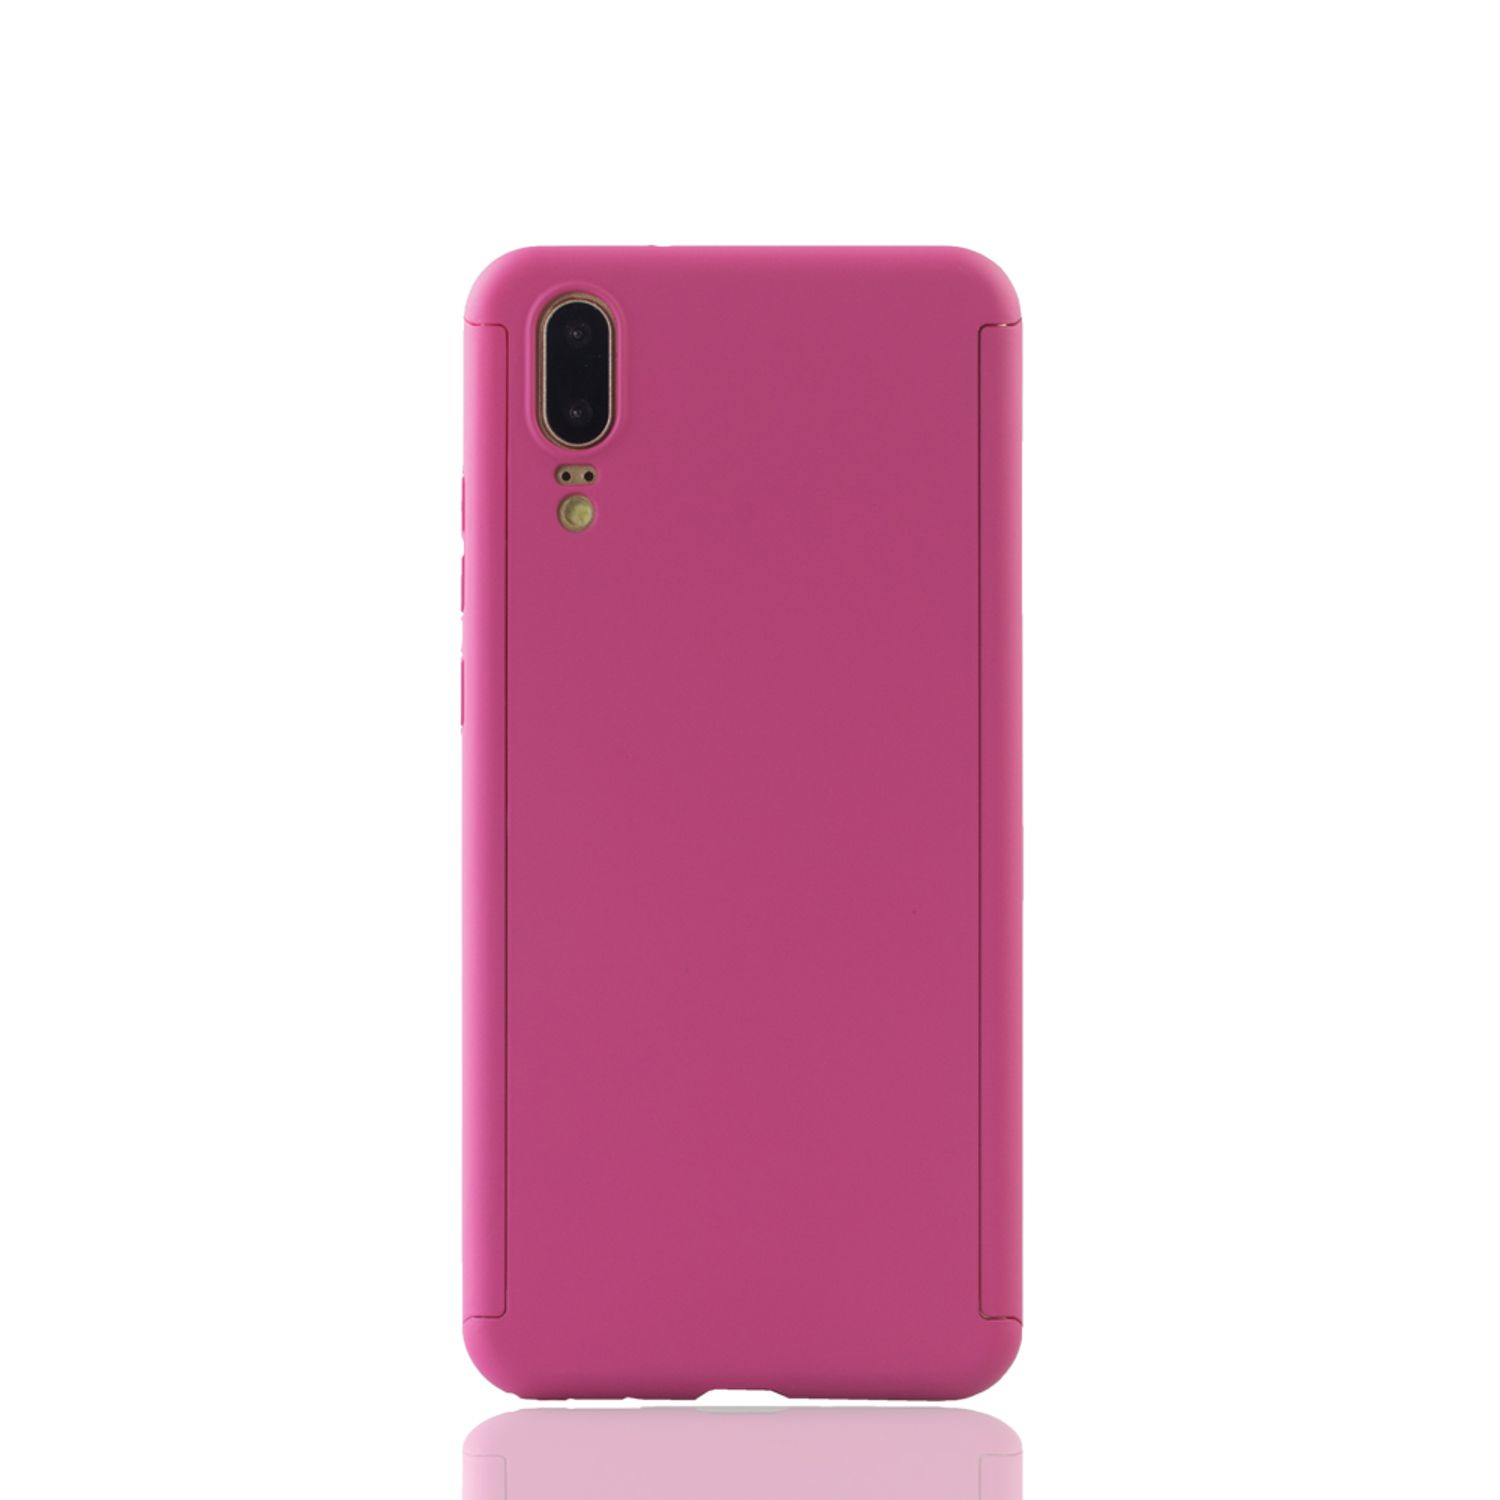 KÖNIG P20, DESIGN Pink Schutzhülle, Cover, Huawei, Full